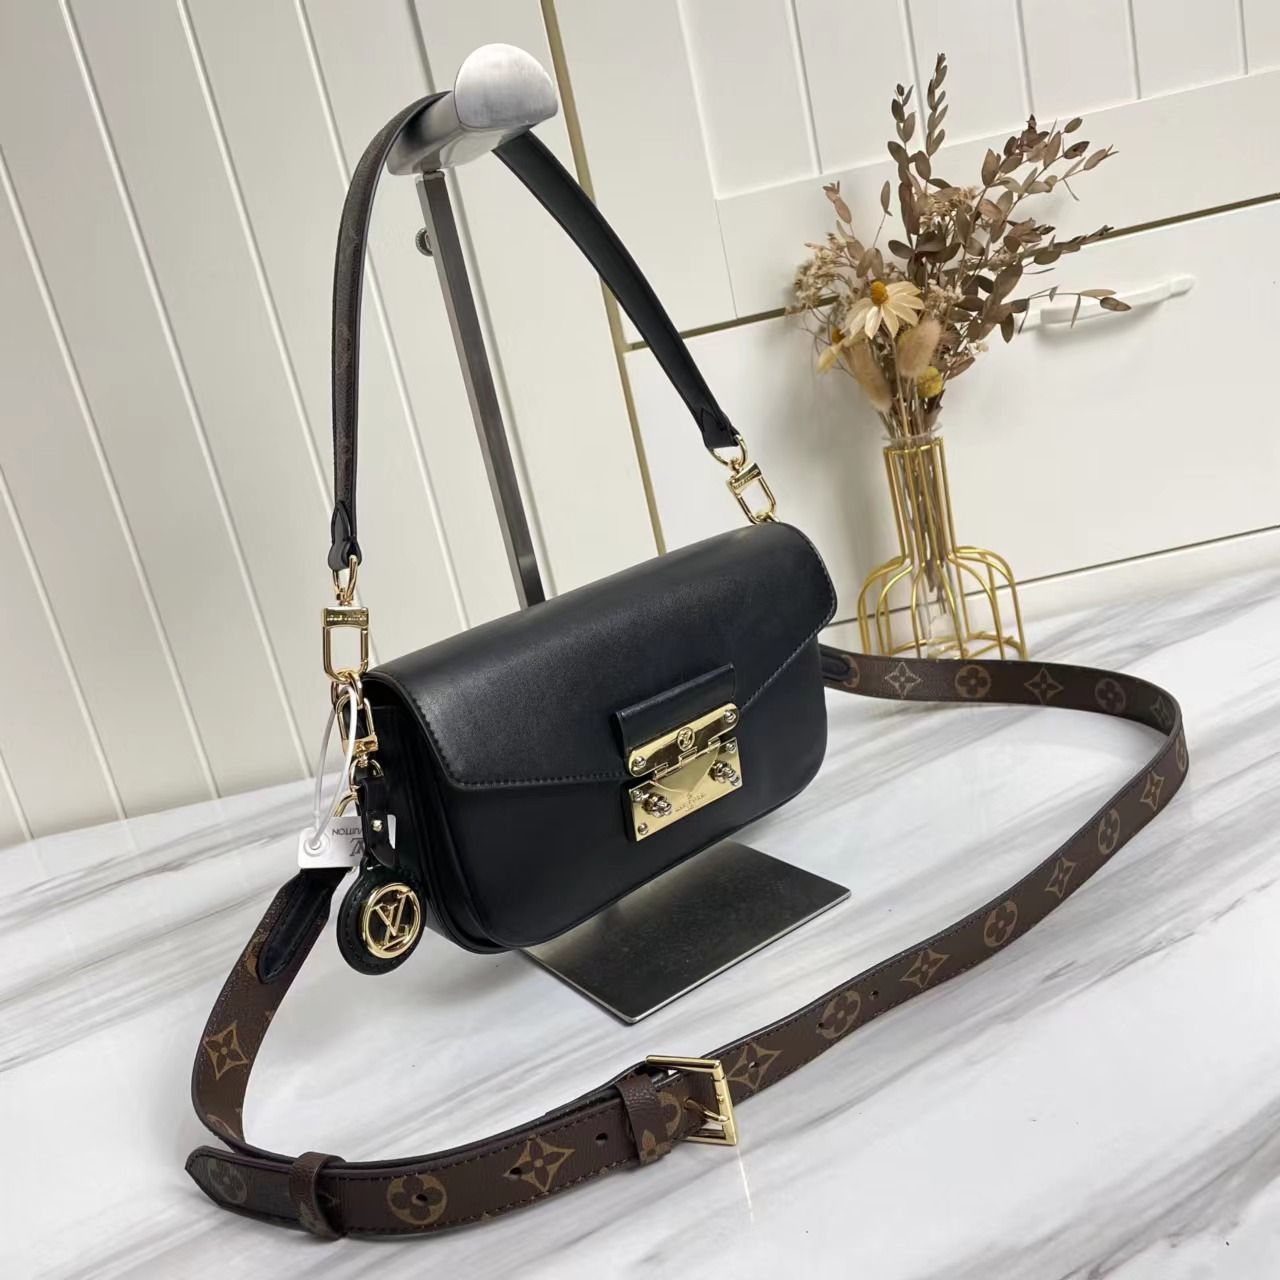 A bag Swing Fashion Leather 24 cm фото 2